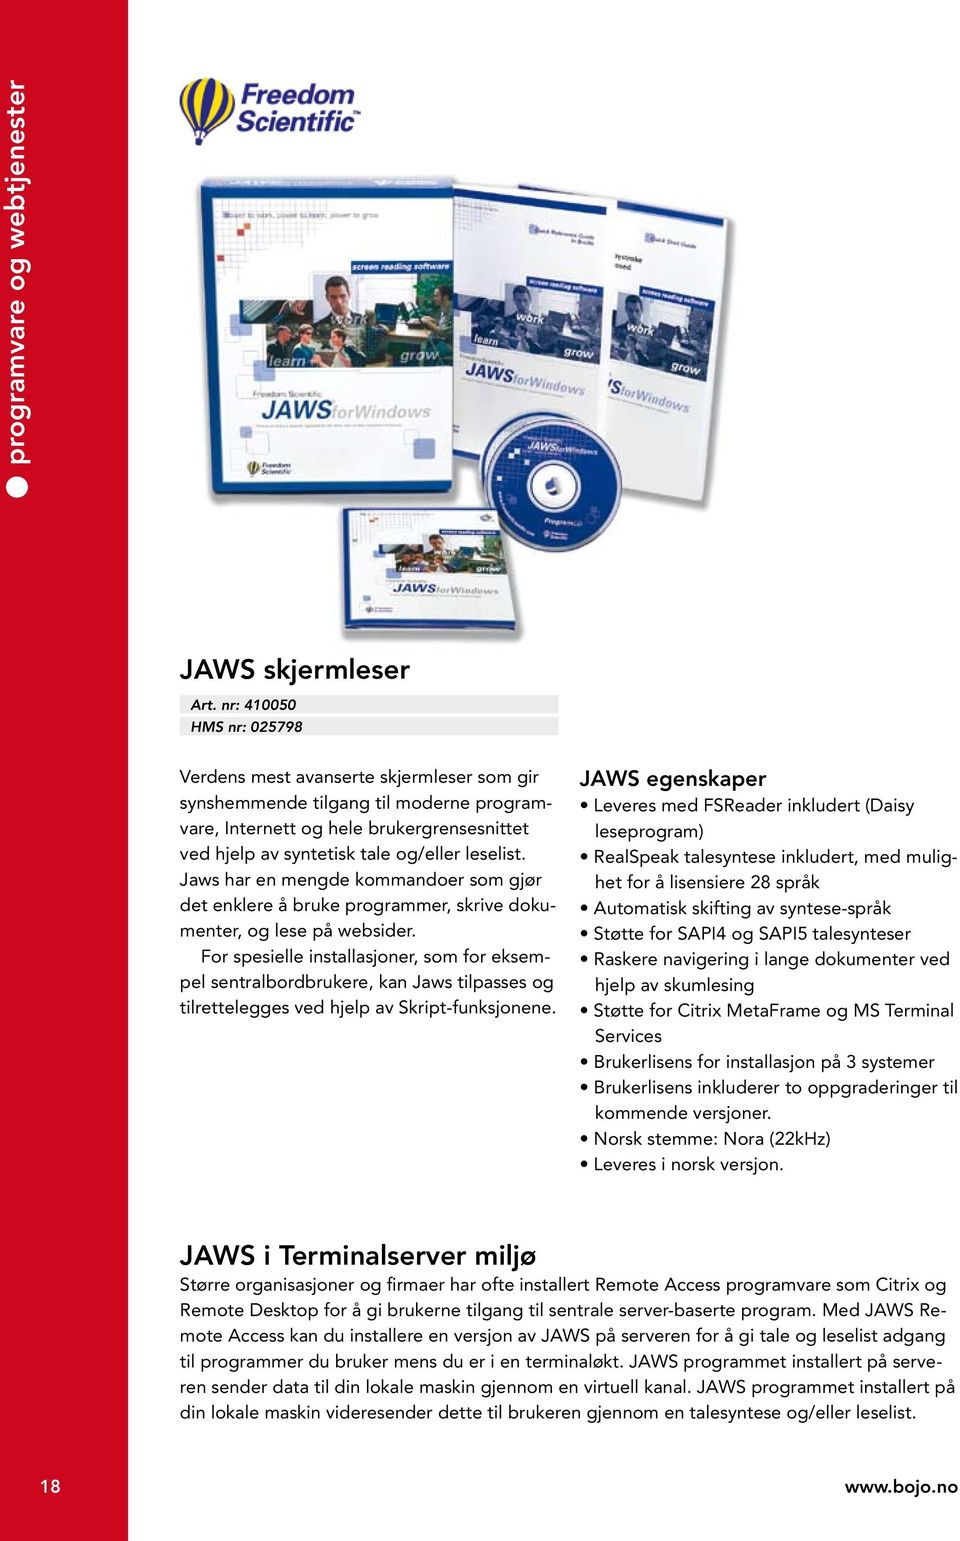 Jaws har en mengde kommandoer som gjør det enklere å bruke programmer, skrive dokumenter, og lese på websider.